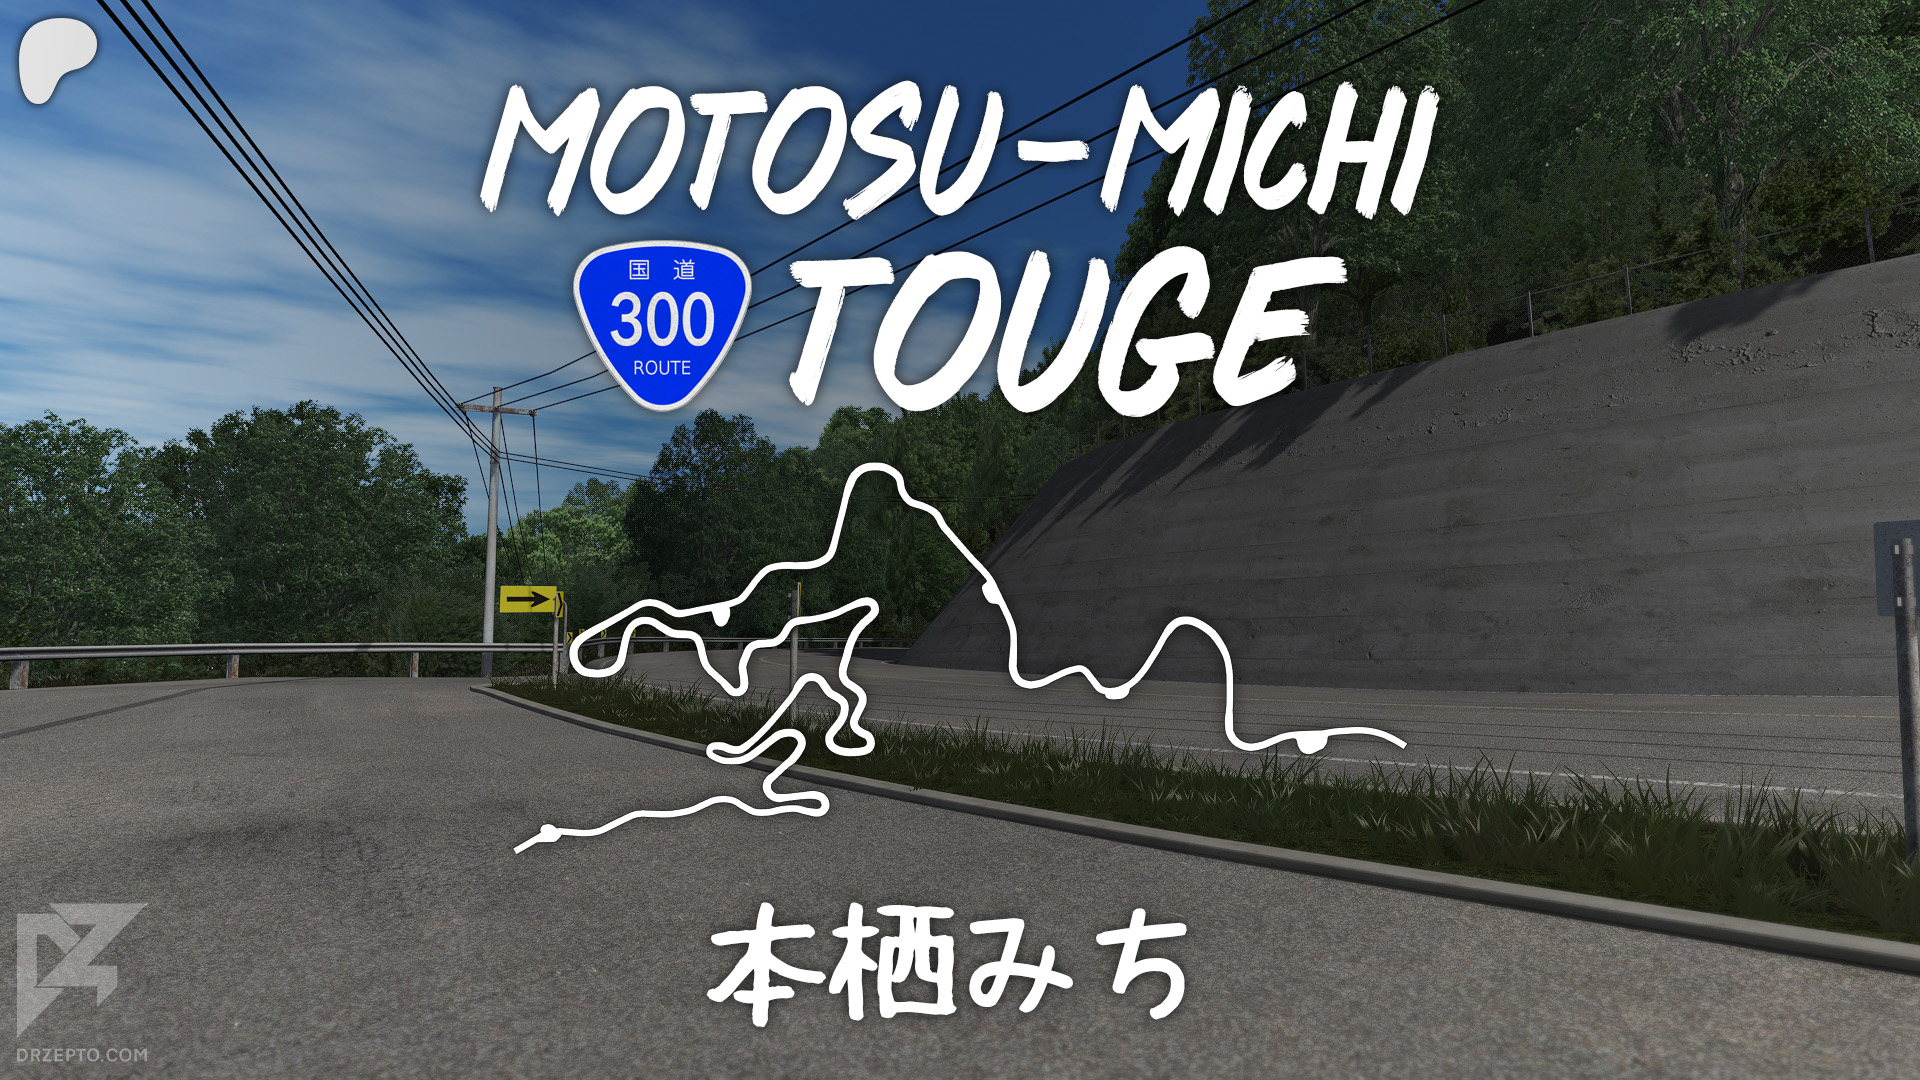 Motosu-michiTougeMainRaceDepartment.jpg